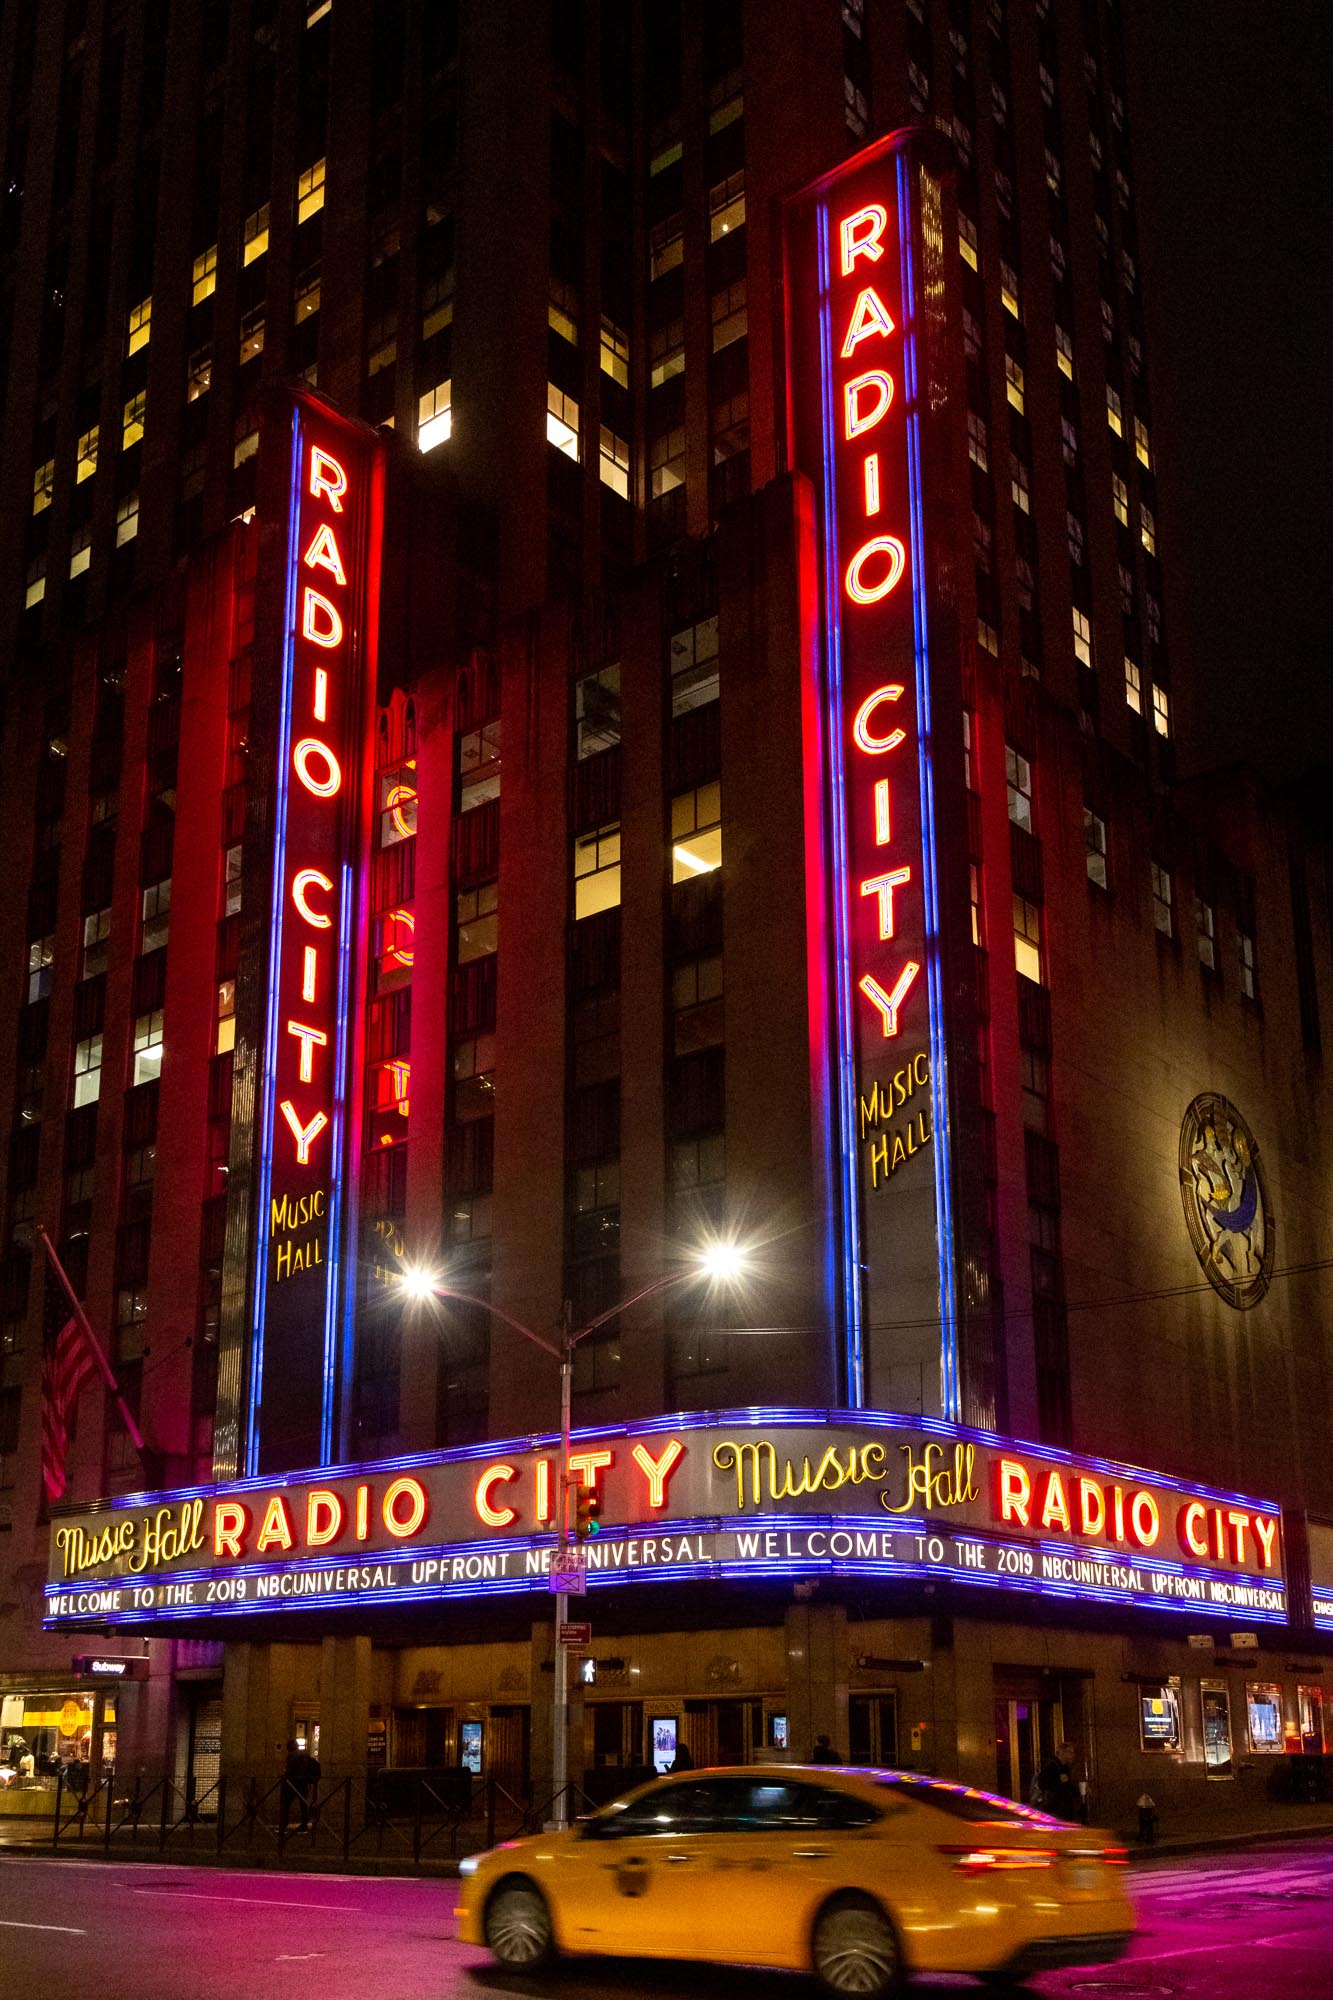 Radio City Music Hall bei Nacht mit gelbem Taxi im Vordergrund